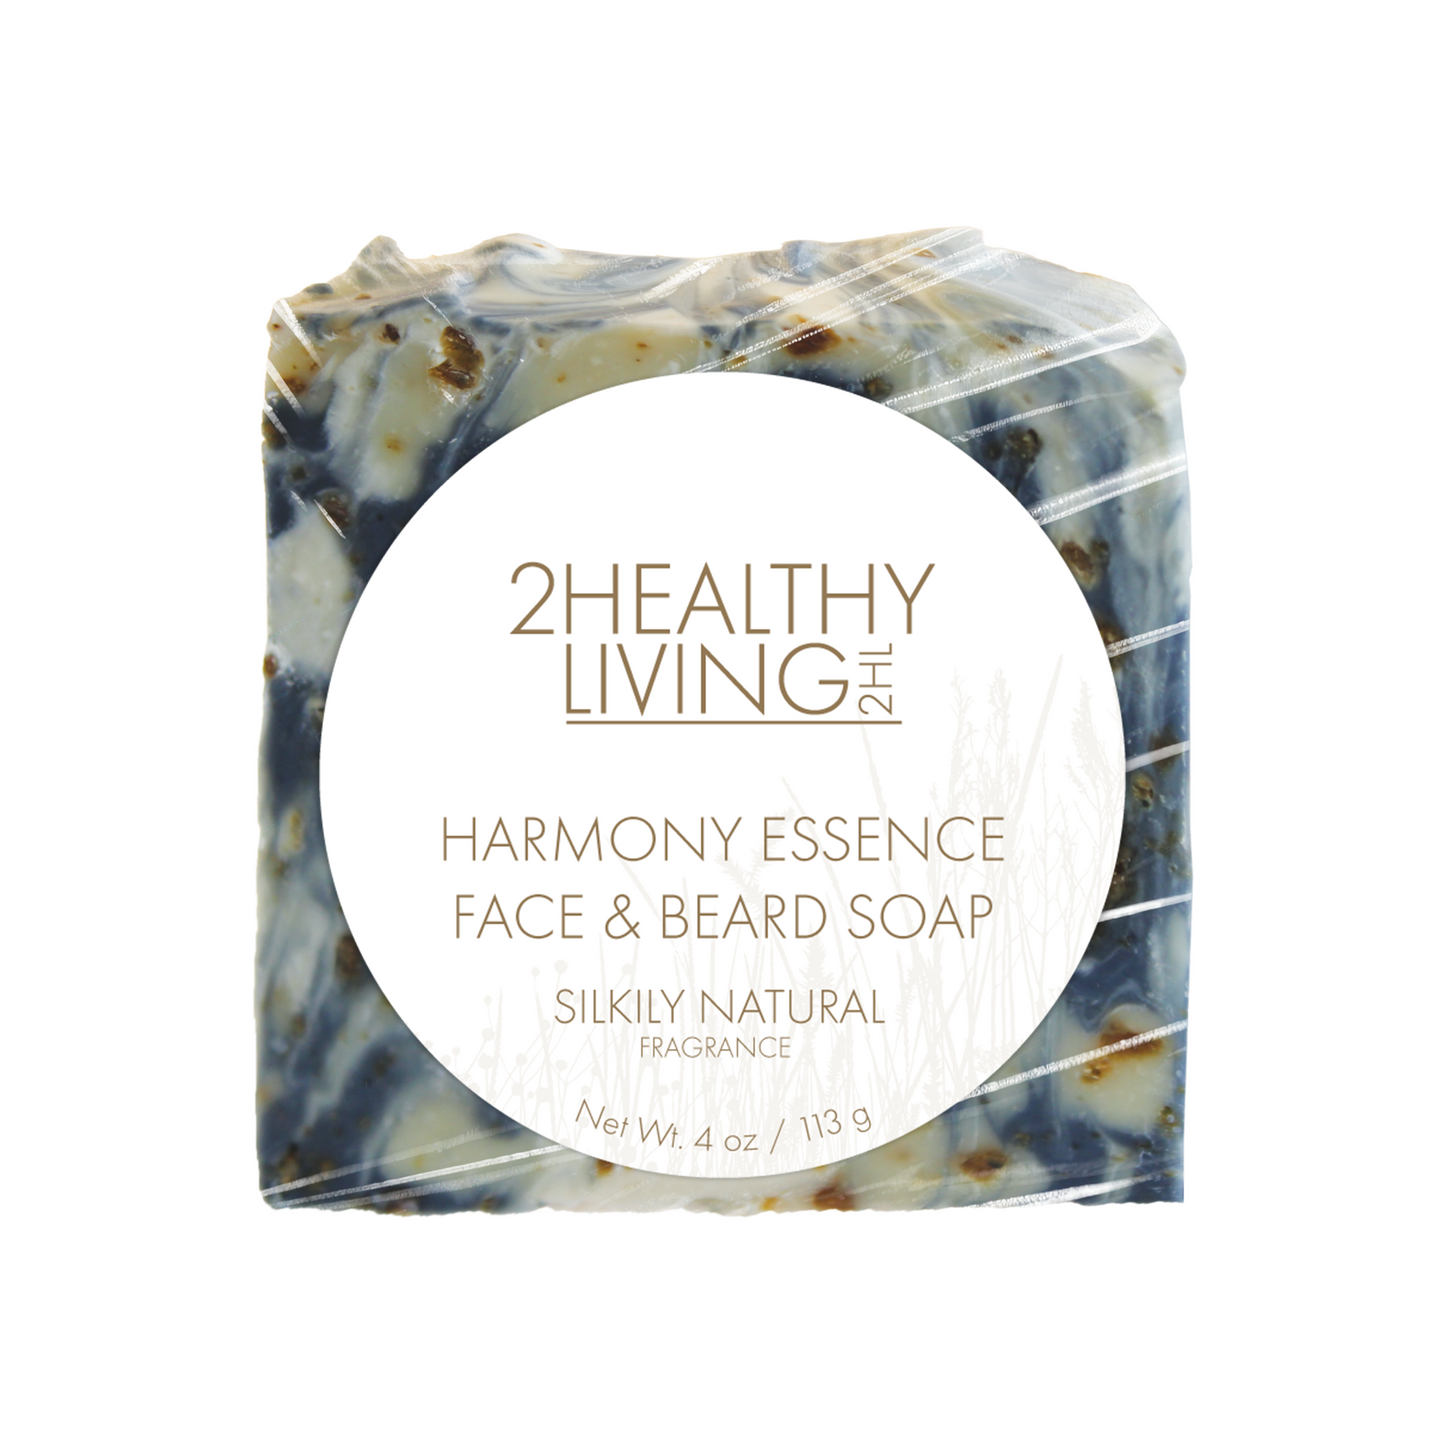 Harmony Essence Face & Beard Soap